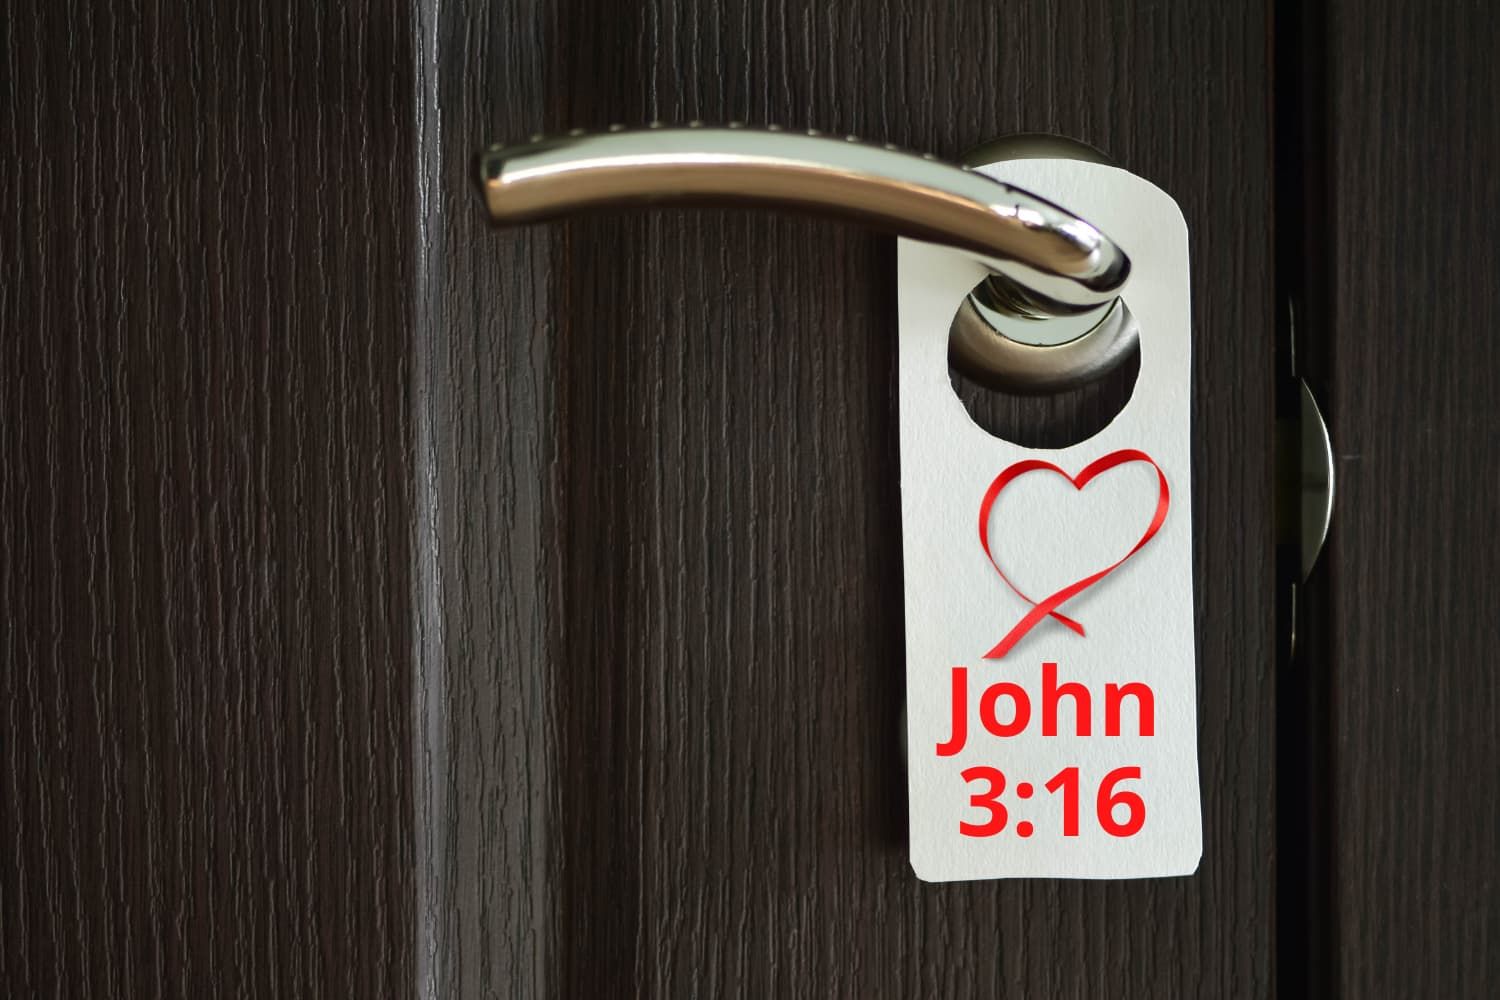 doorhanger-efc8e990 Jesus - His encounters